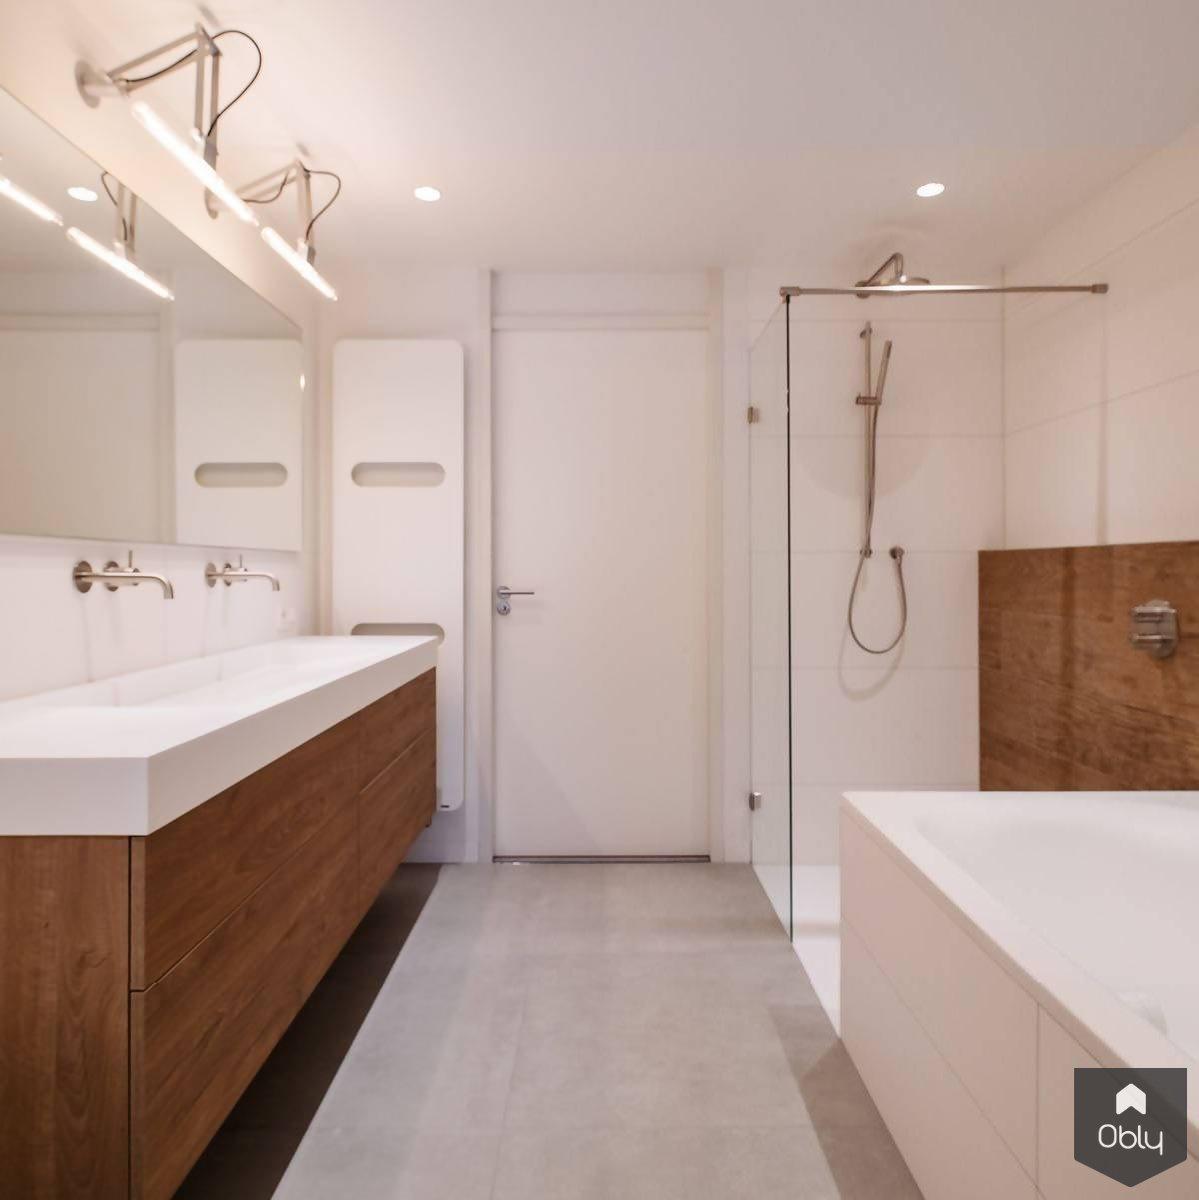 Afgrond Bevestigen Uitputting Moderne badkamer met houten elementen en inbouwkast | OBLY.com | OBLY